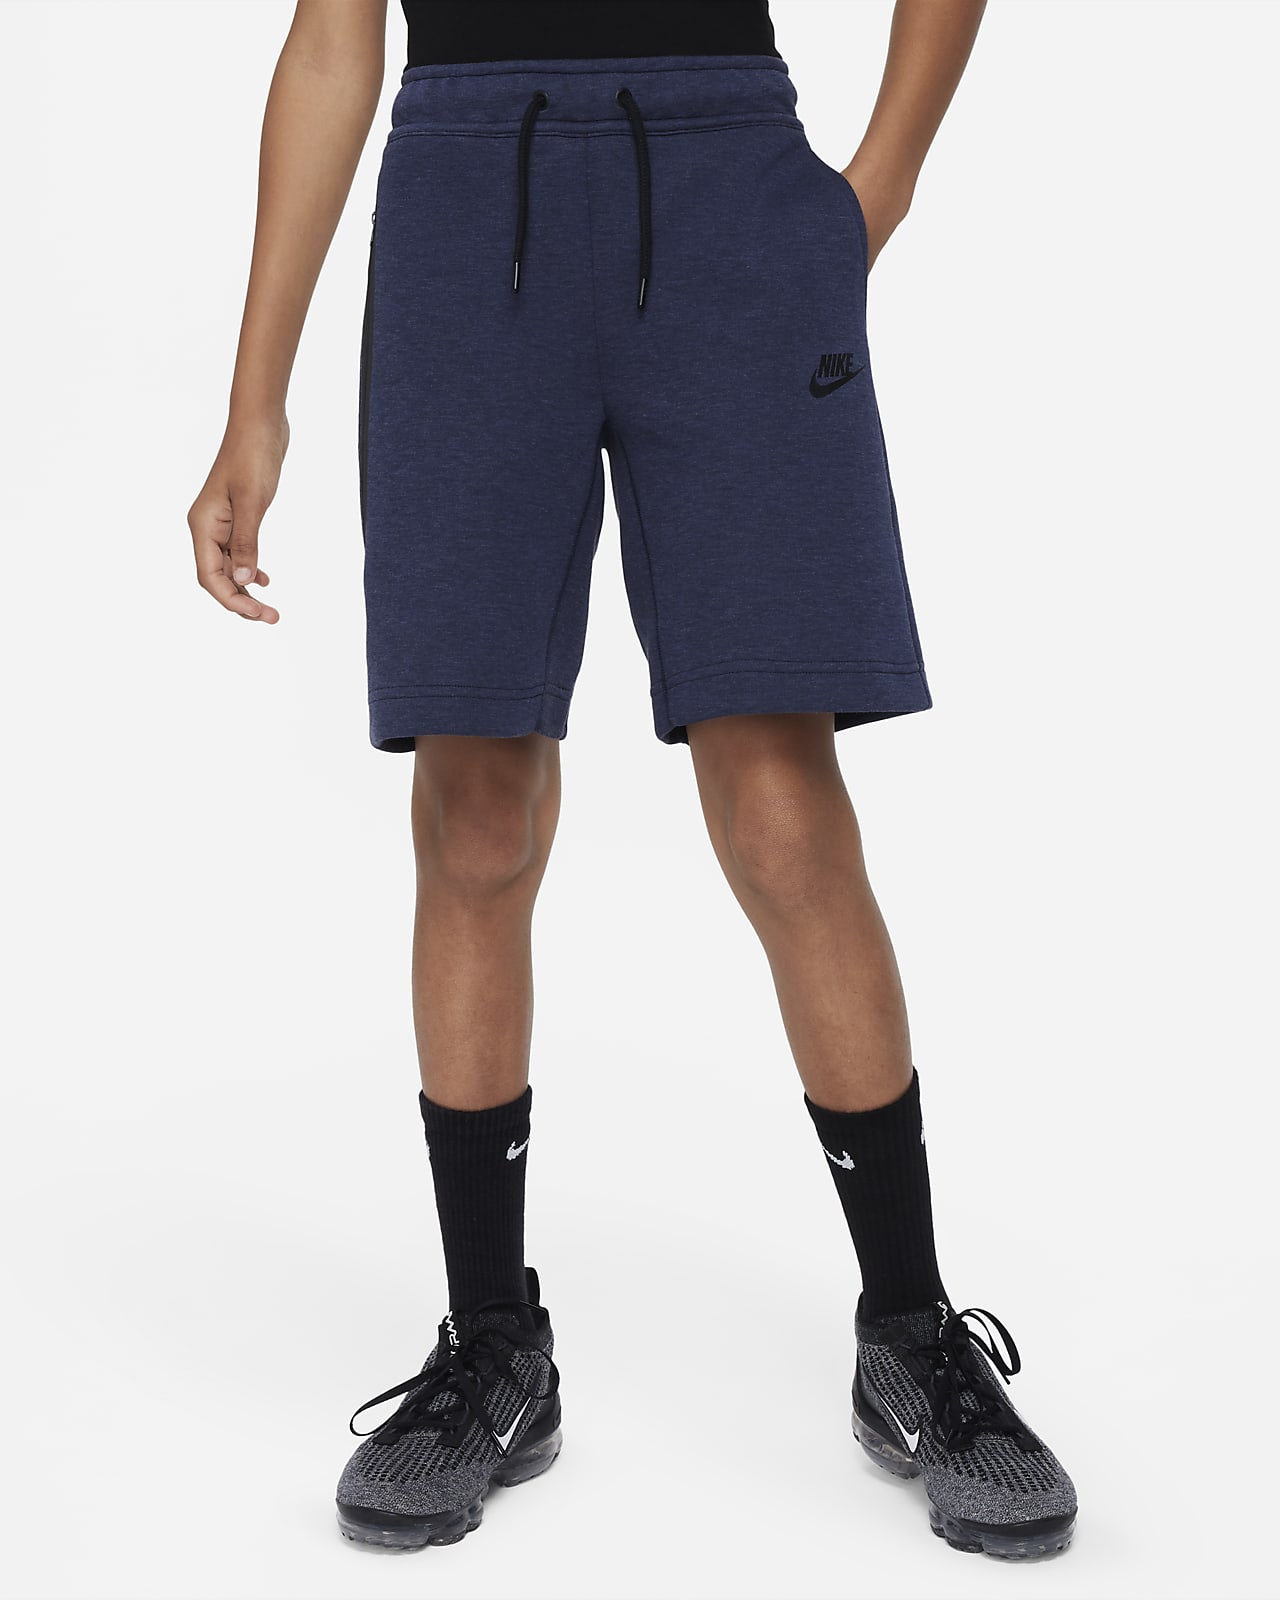 Shorts para niños talla grande Nike Tech Fleece